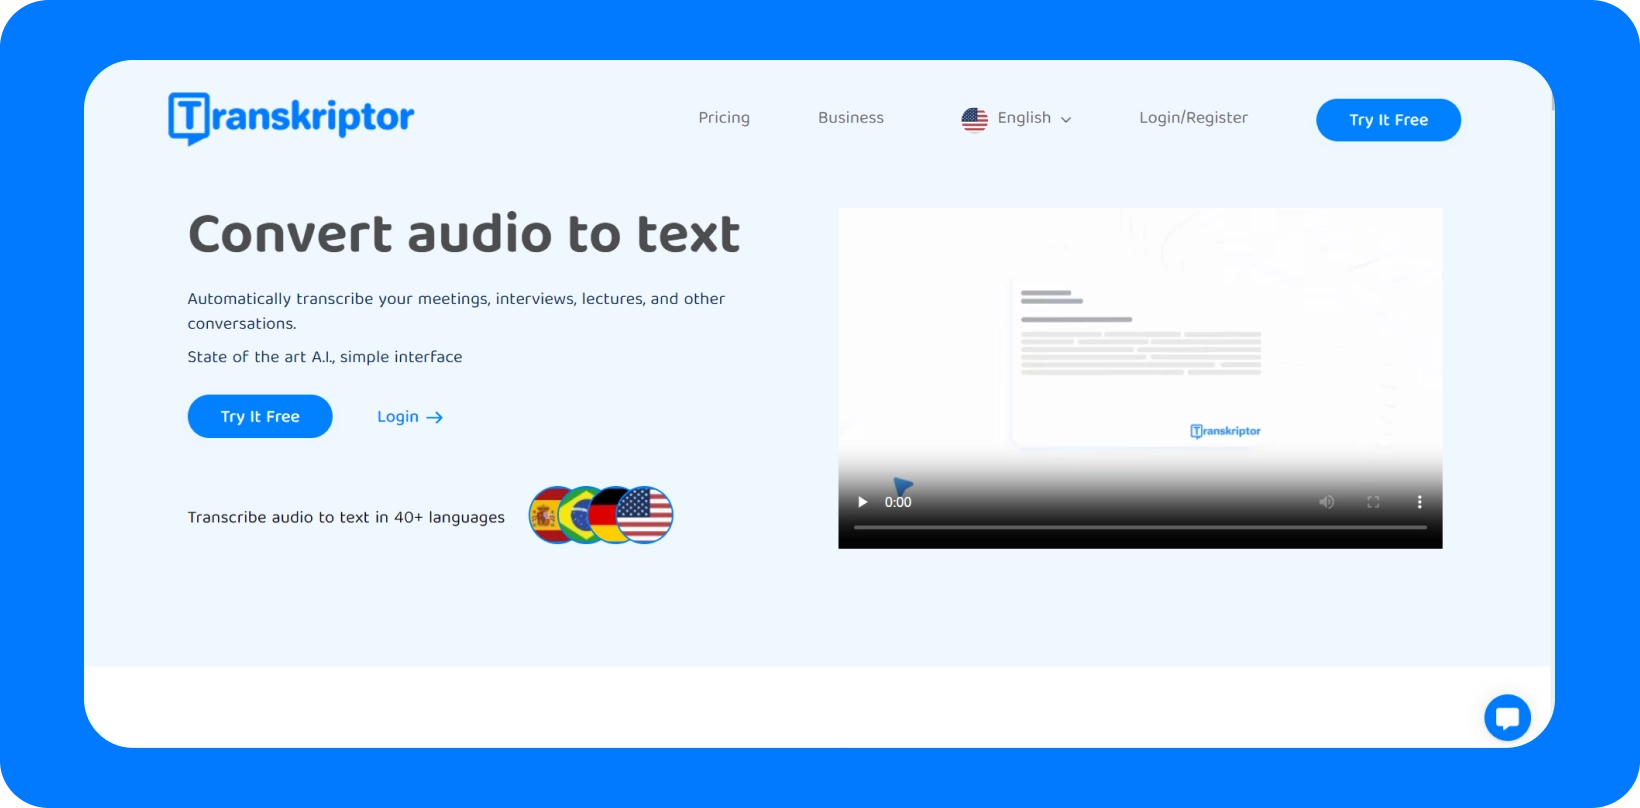 Transkriptor rozhraní představující službu "Převod zvuku na text" s podporou více jazyků.